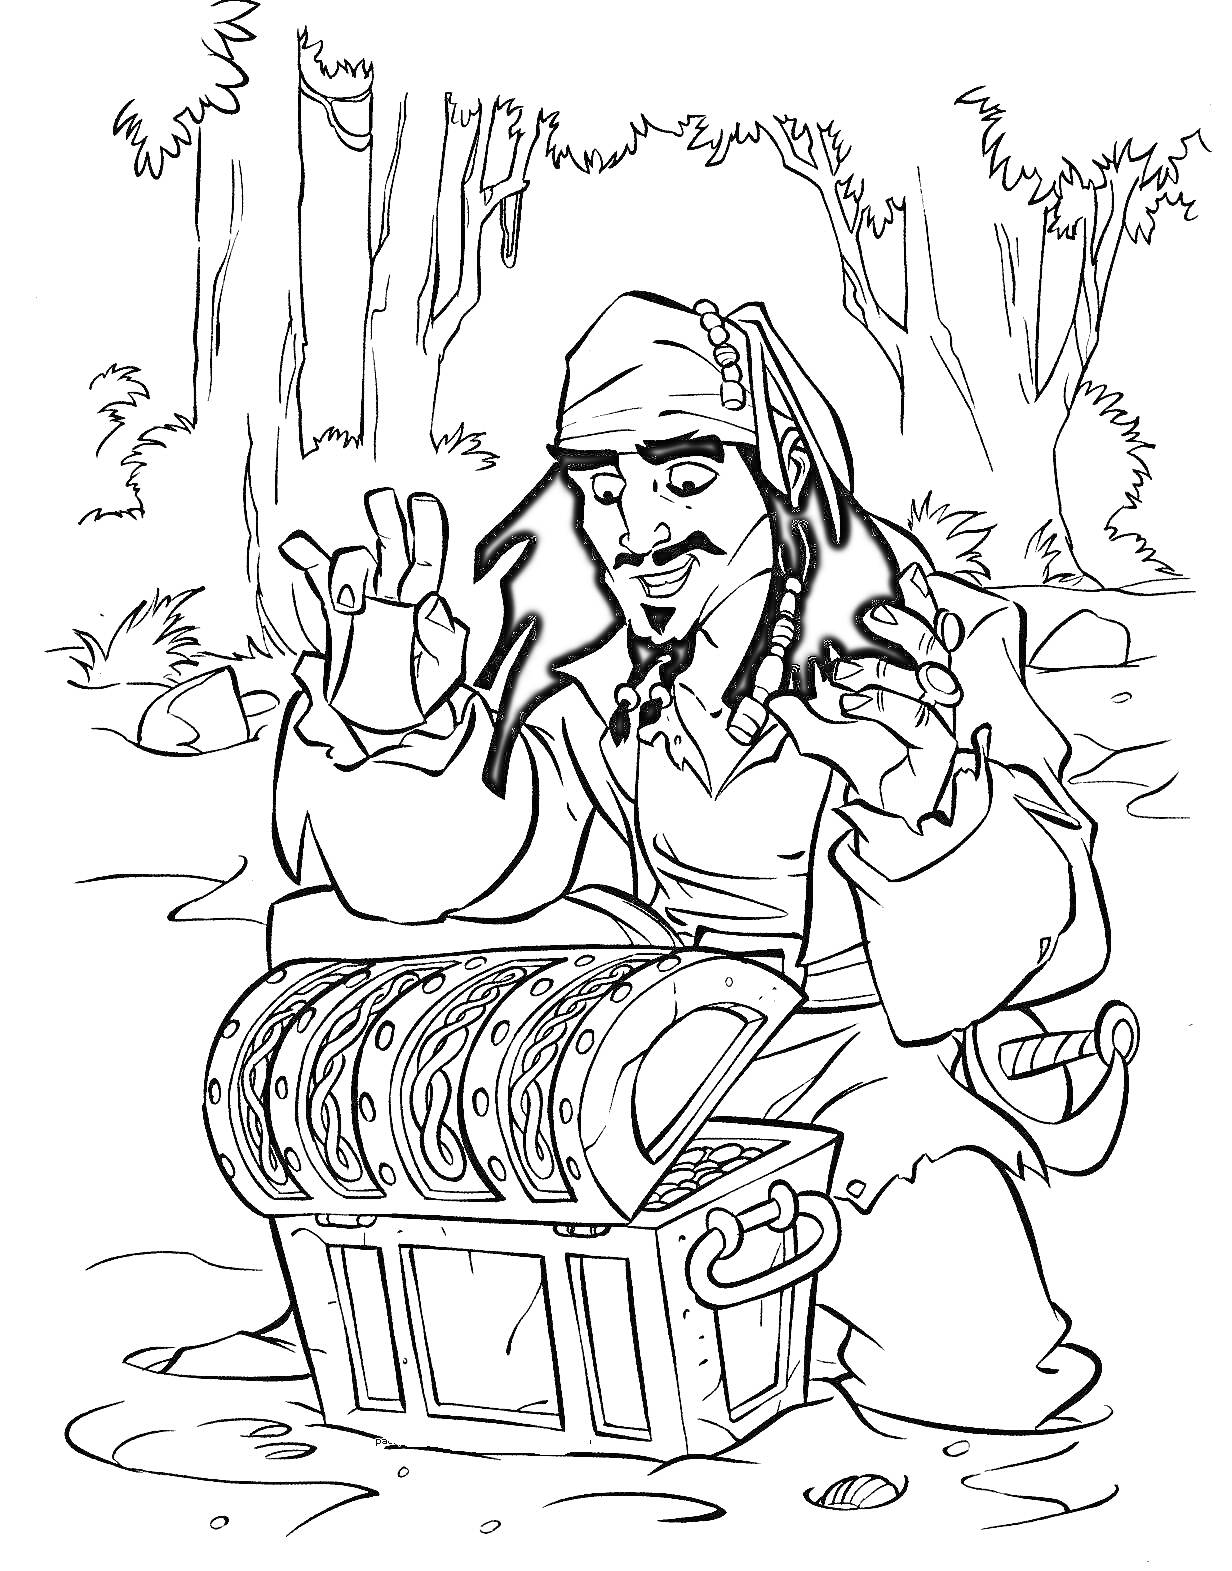 Пират открывает сундук с сокровищами в лесу